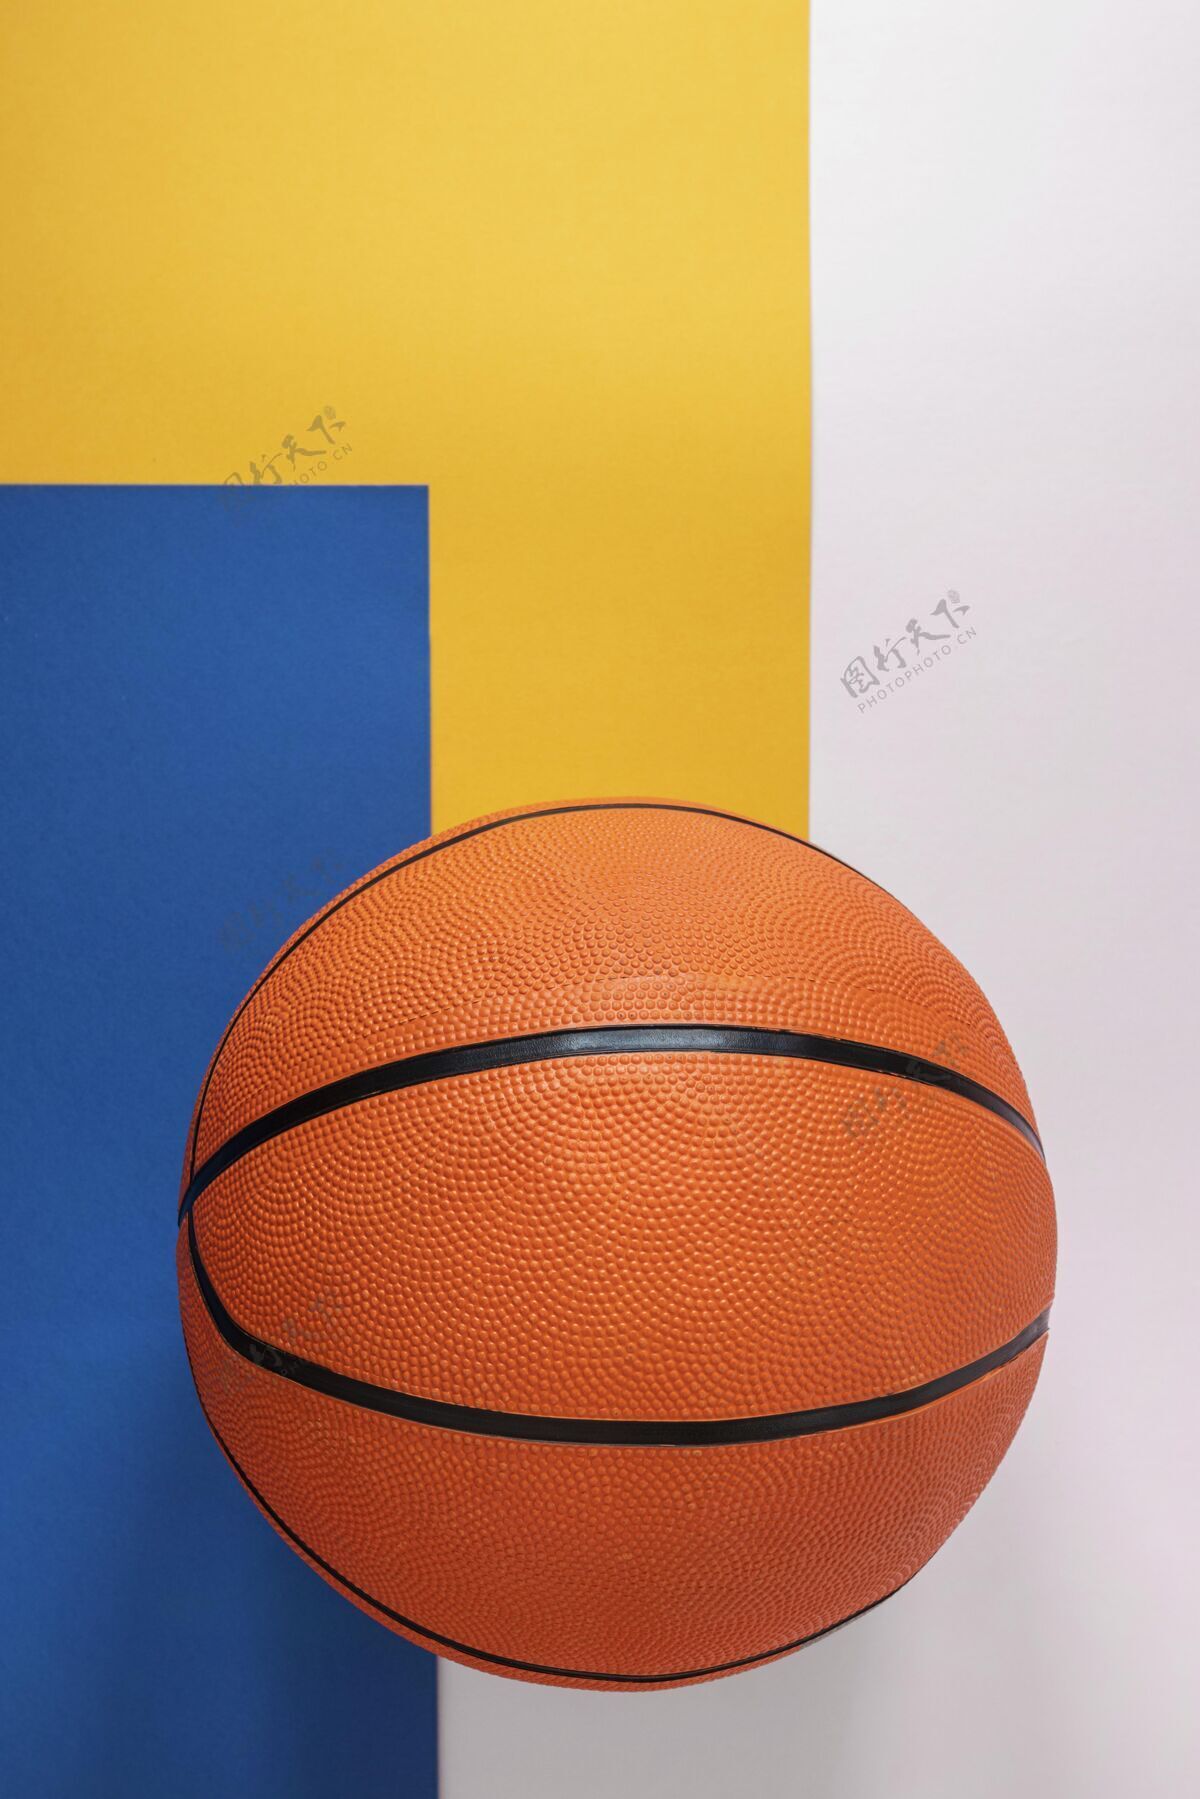 运动顶视图的新篮球与复制空间复制生活篮球